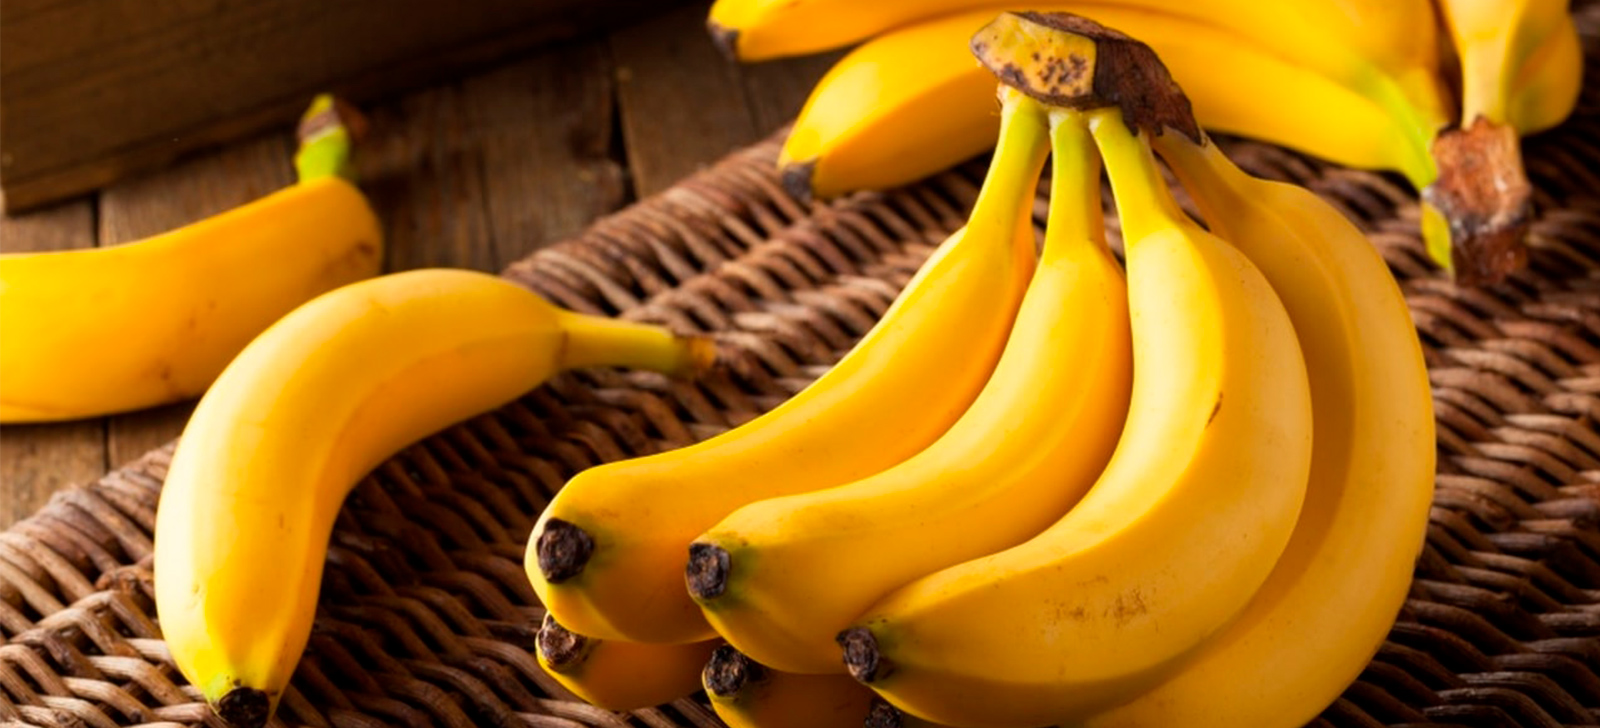 farmacia manipulacao campinas nova natural blog natureza magistral envelhecer banana rica em energia